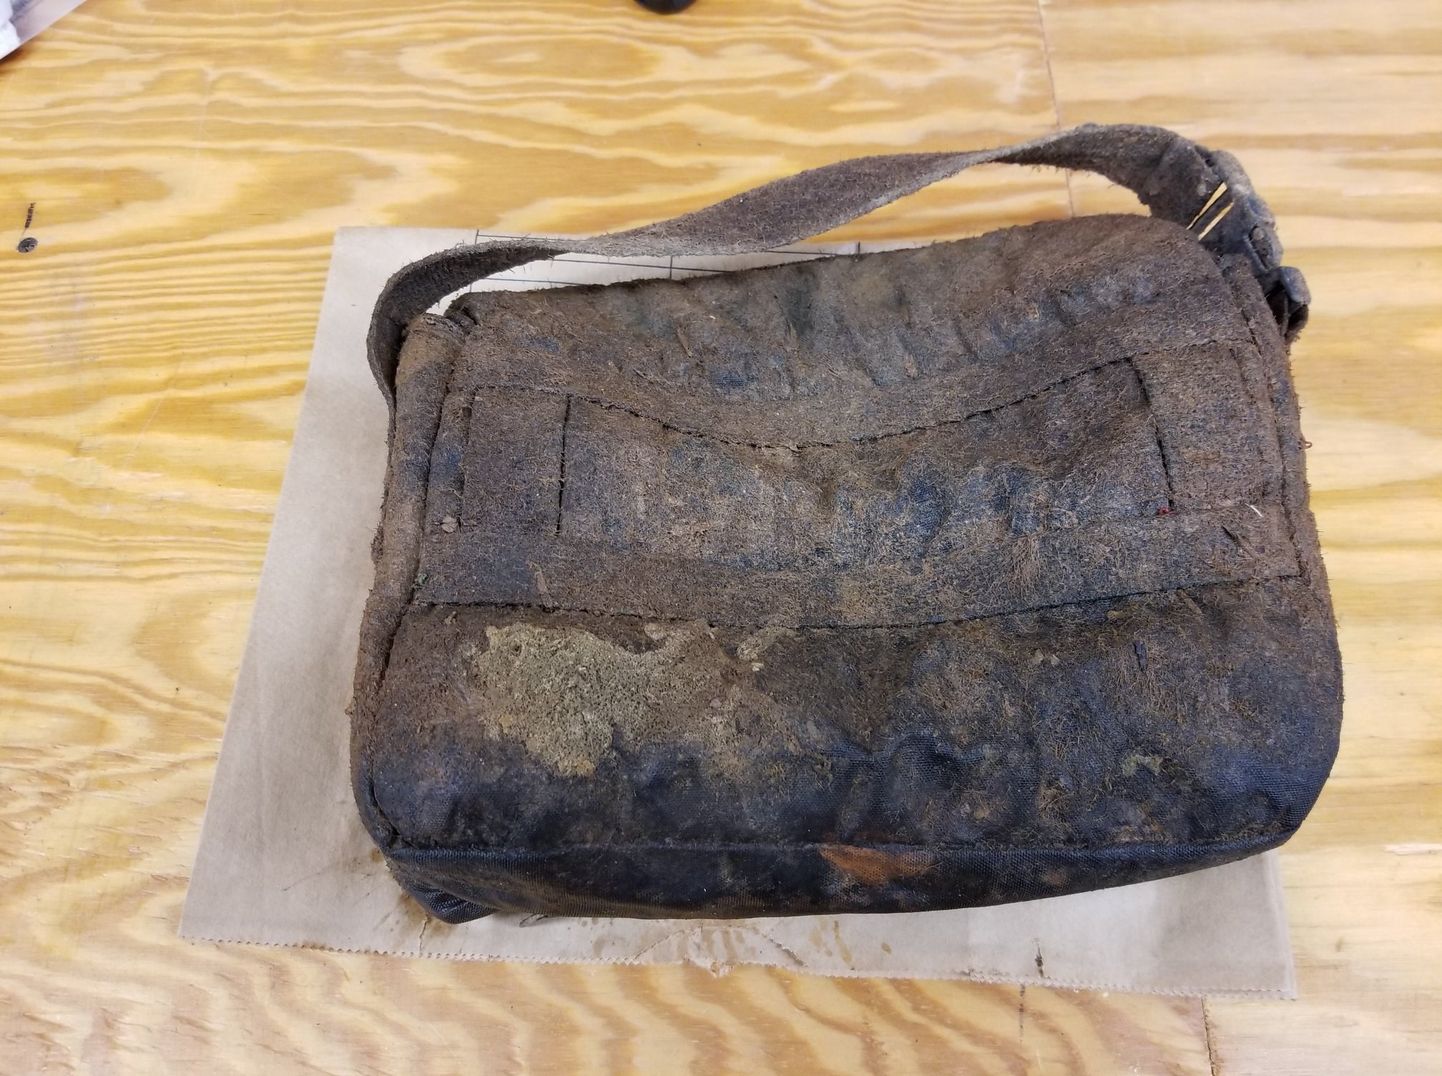 Oconee tehisjärve visatud kott, milles oli relvi ja ehteid